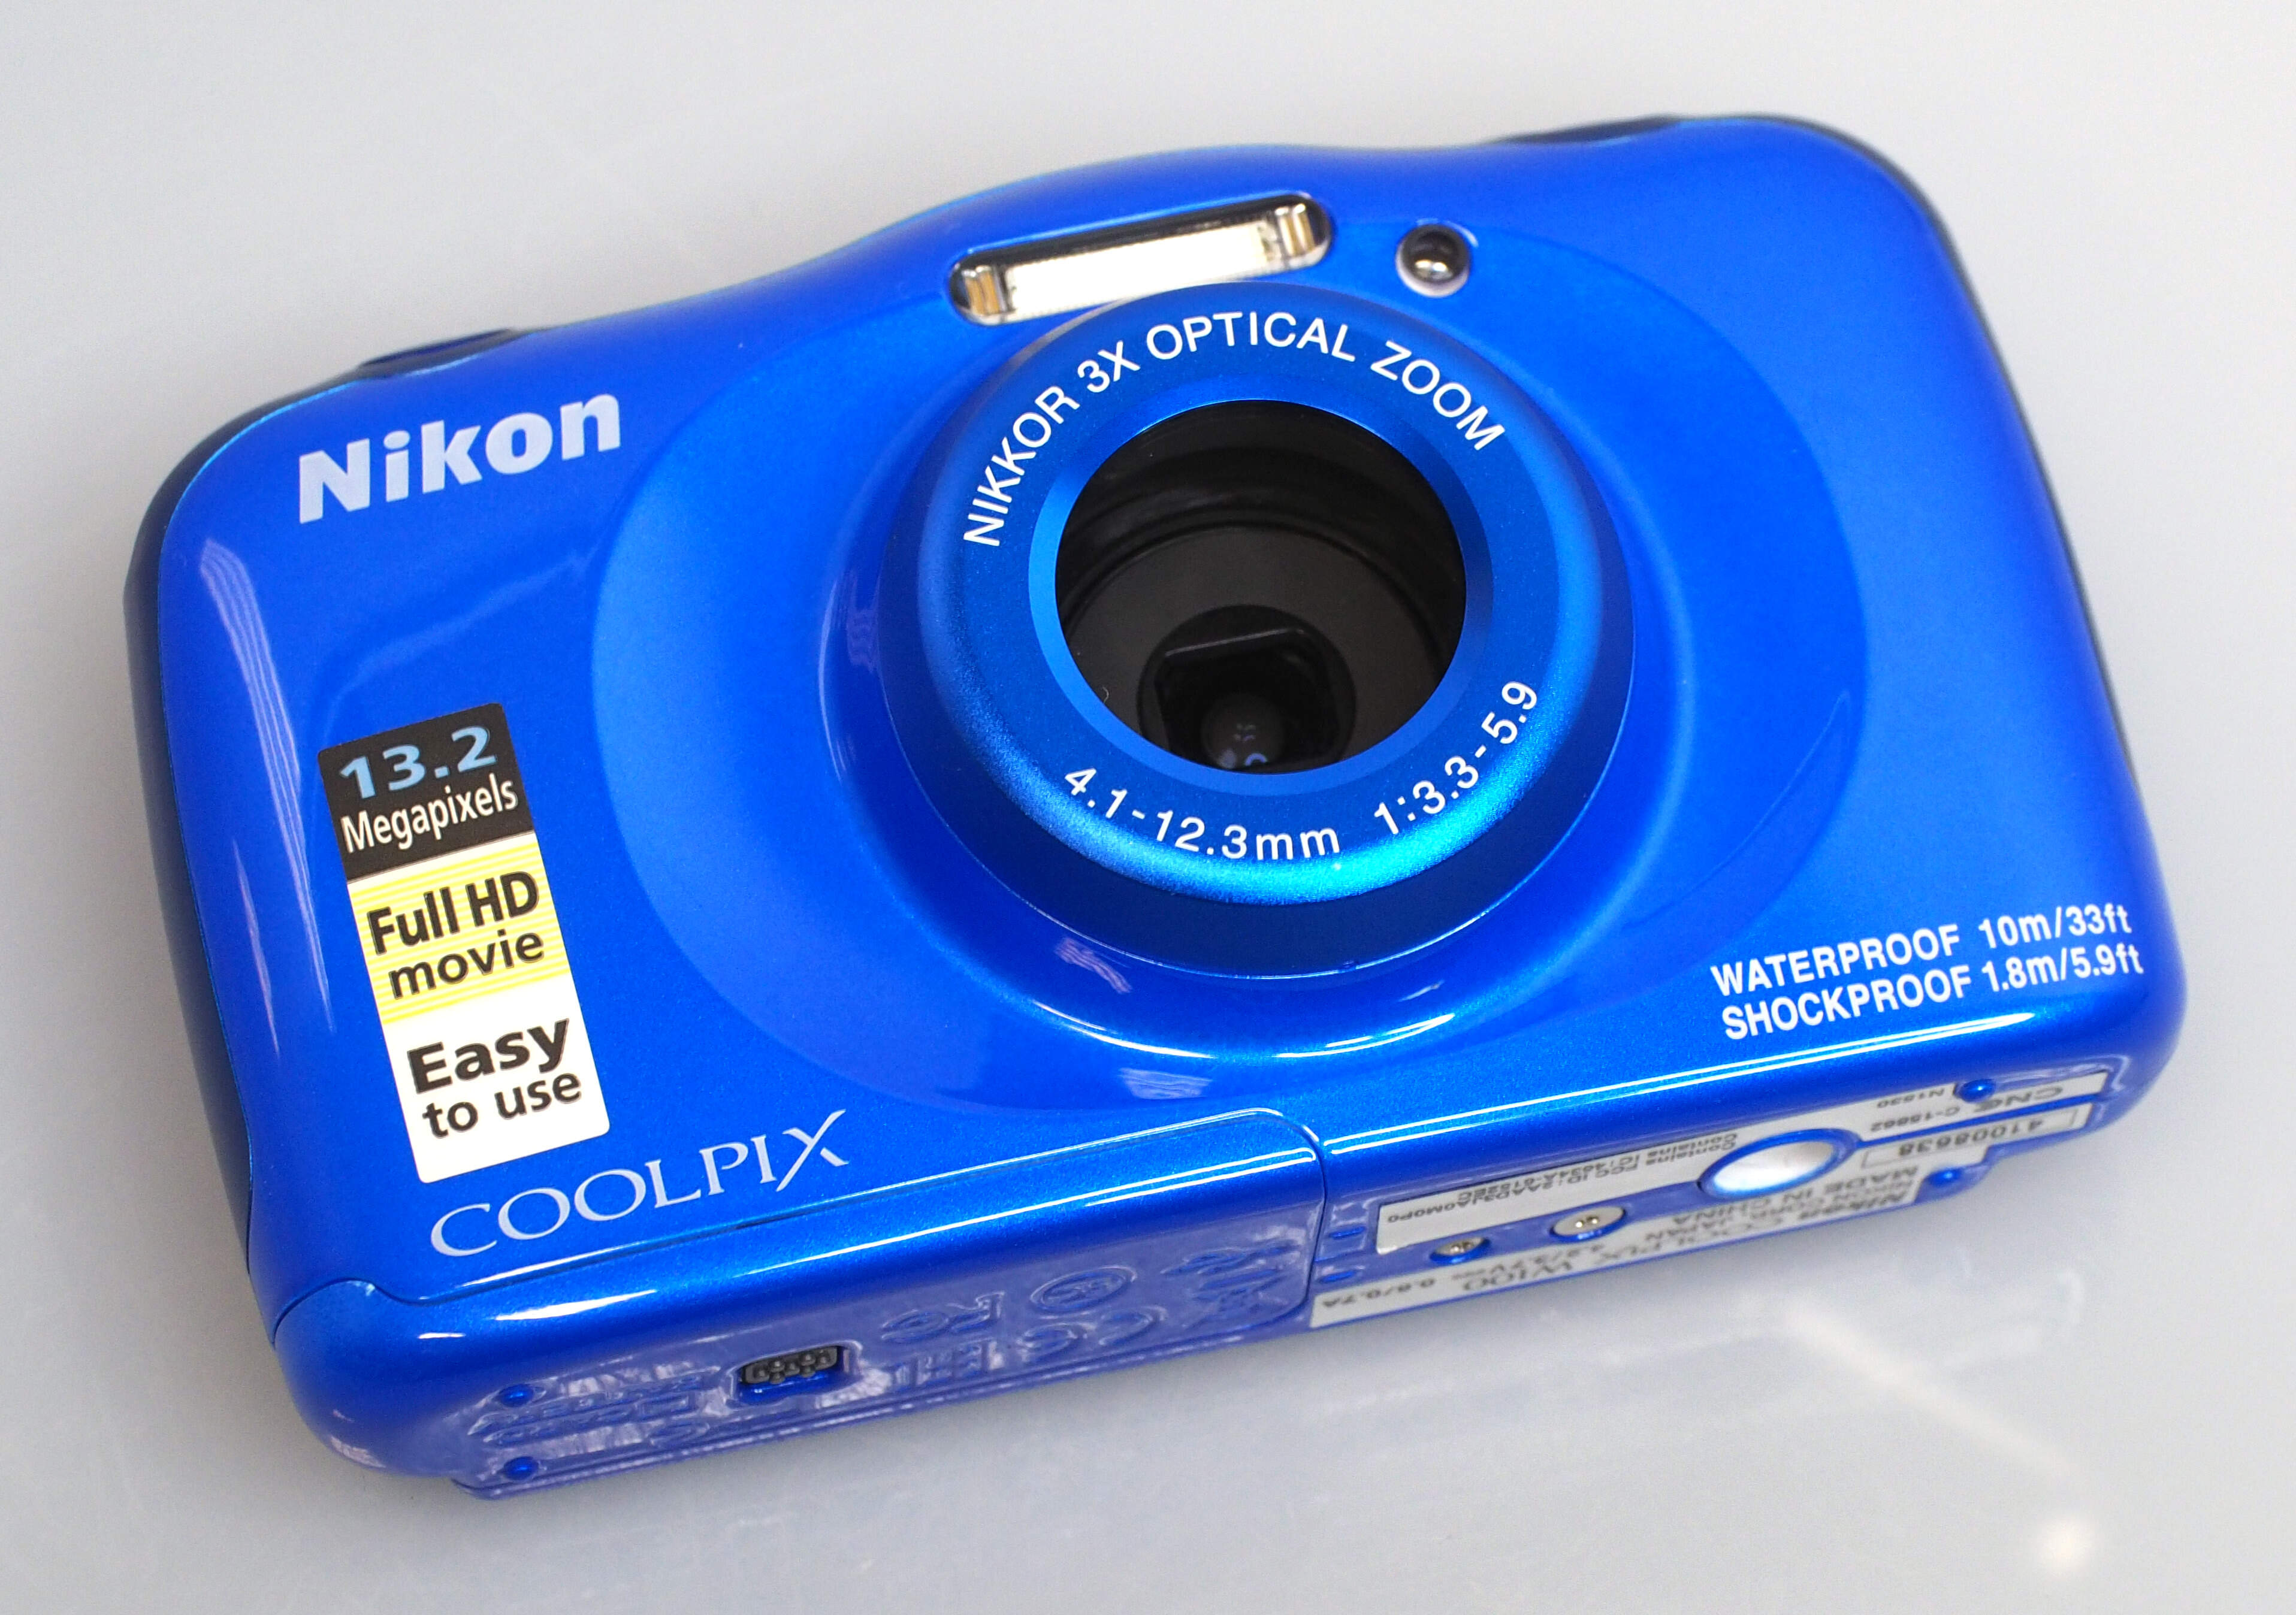 Nikon Coolpix W100 Review